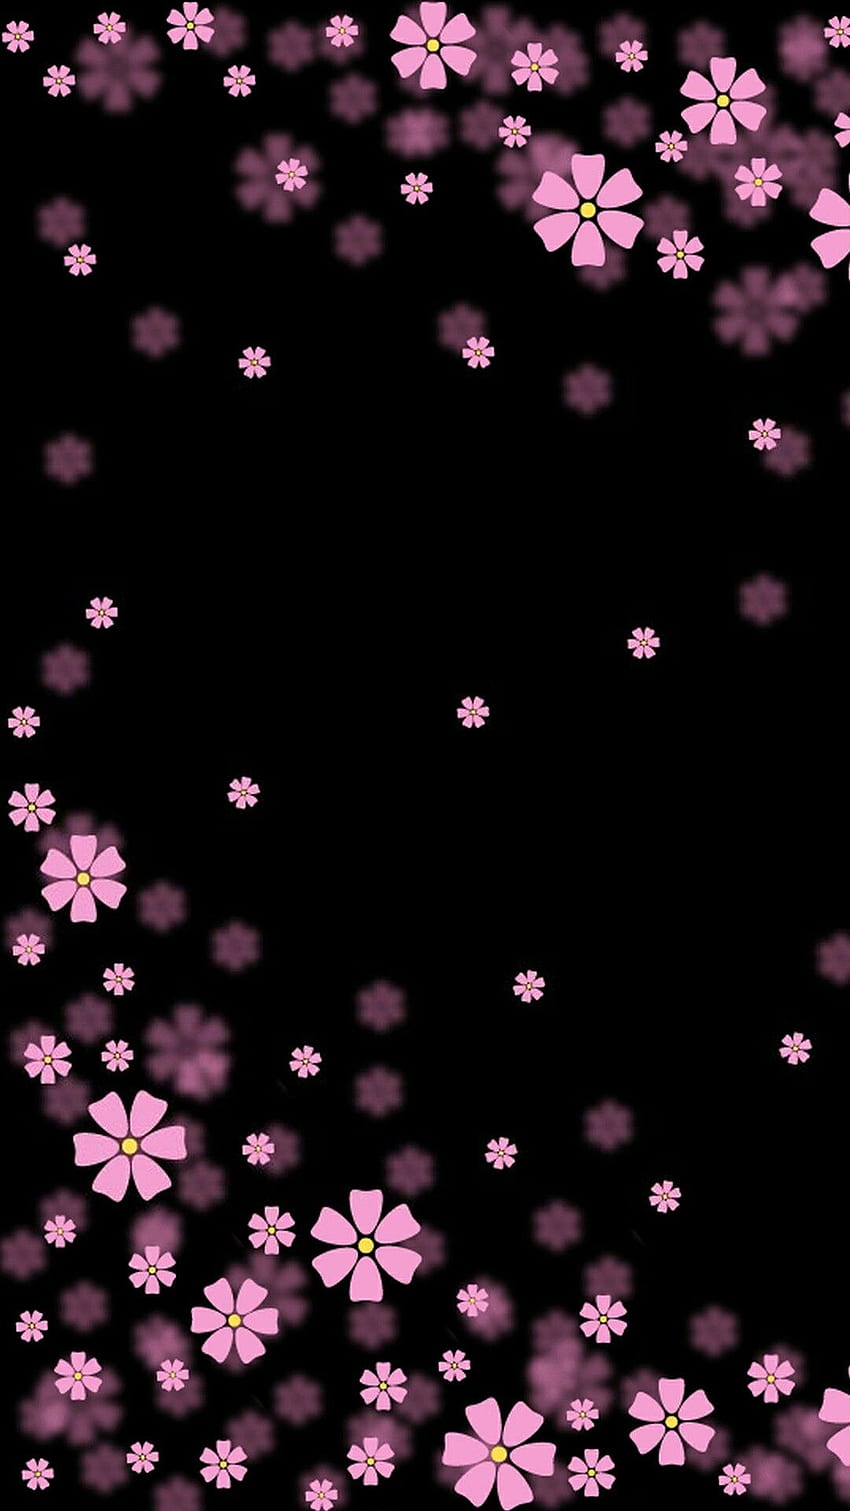 WhatsApp Hearts, bubbles, dark, heart, pink, purple, red, HD phone wallpaper  | Peakpx